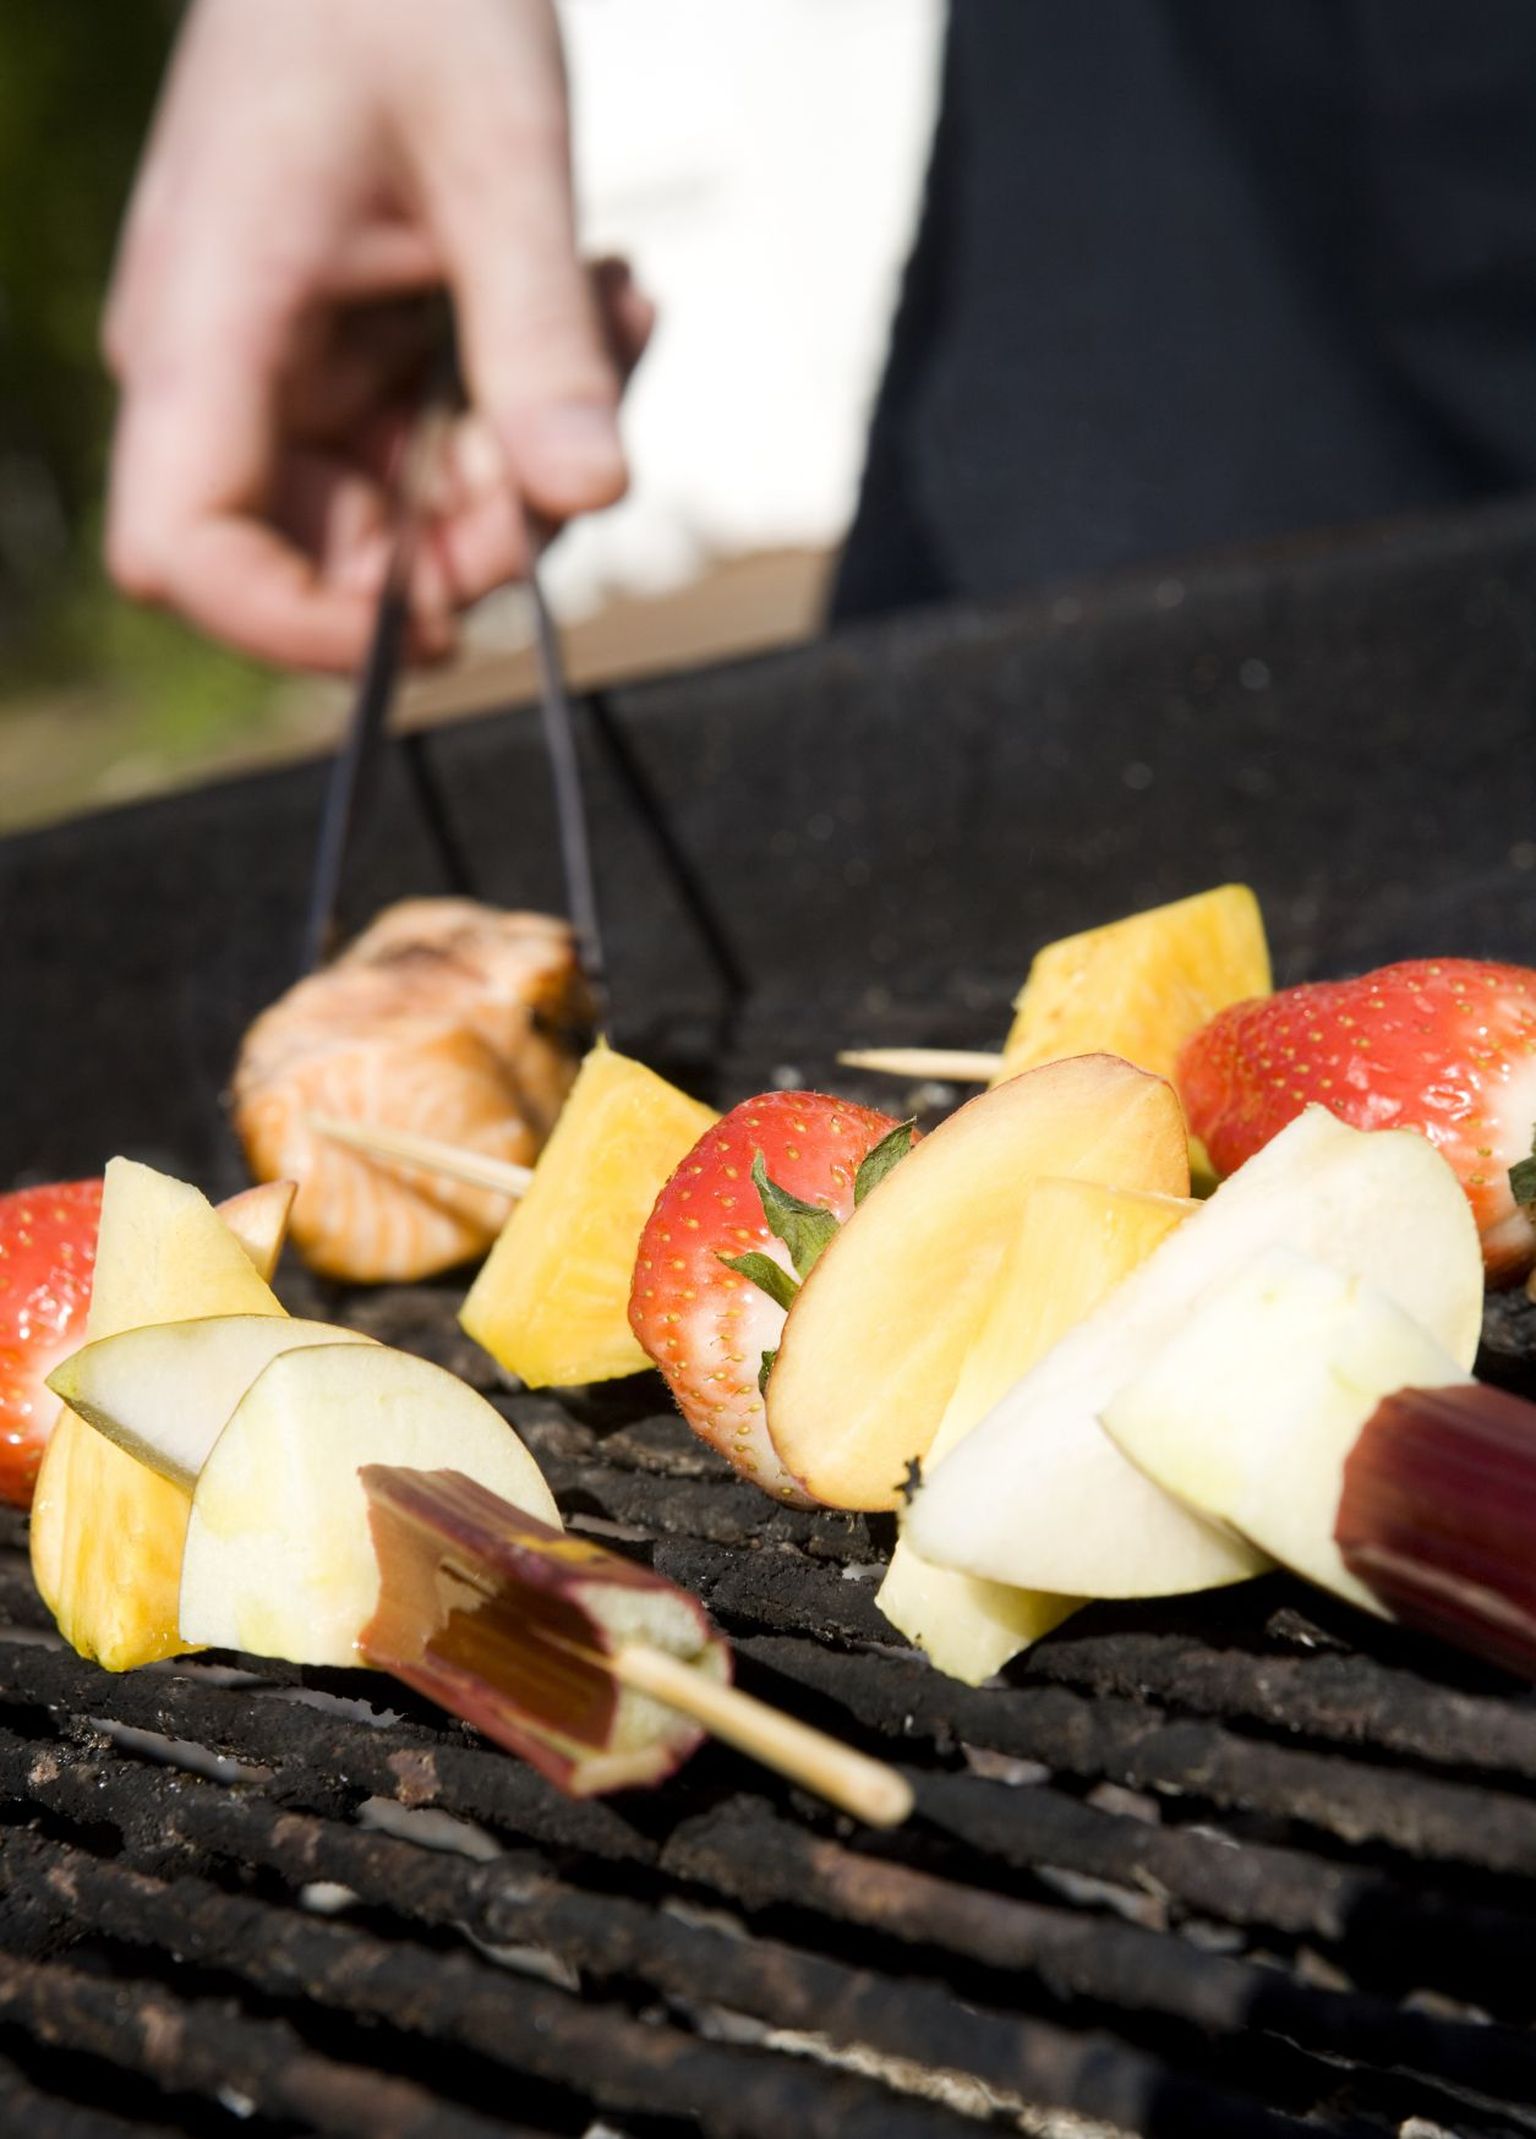 Grillpeol tuleks kinni pidada olulistest ohutusnõuetest, ükskõik, kas grillitakse liha või puu- ja juurvilju.